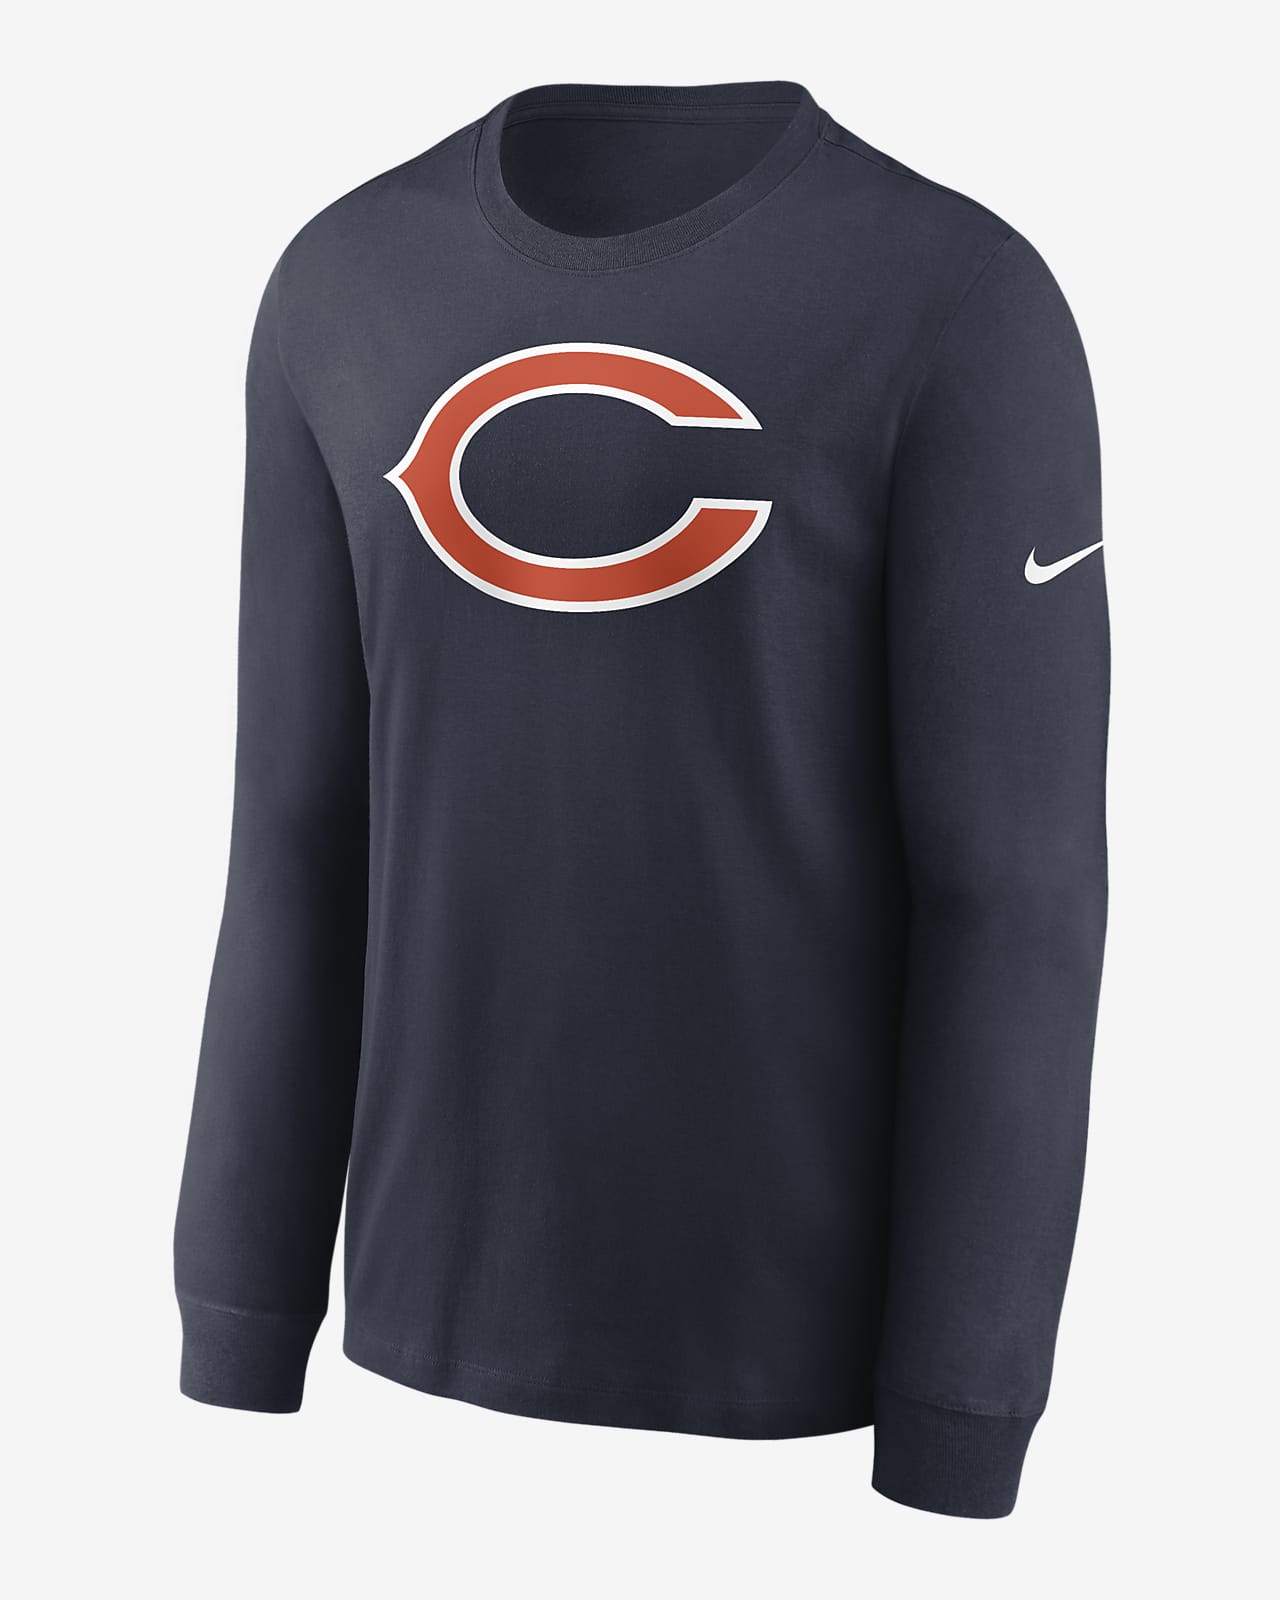 Nike Primary Logo (NFL Chicago Bears) Men’s Long-Sleeve T-Shirt